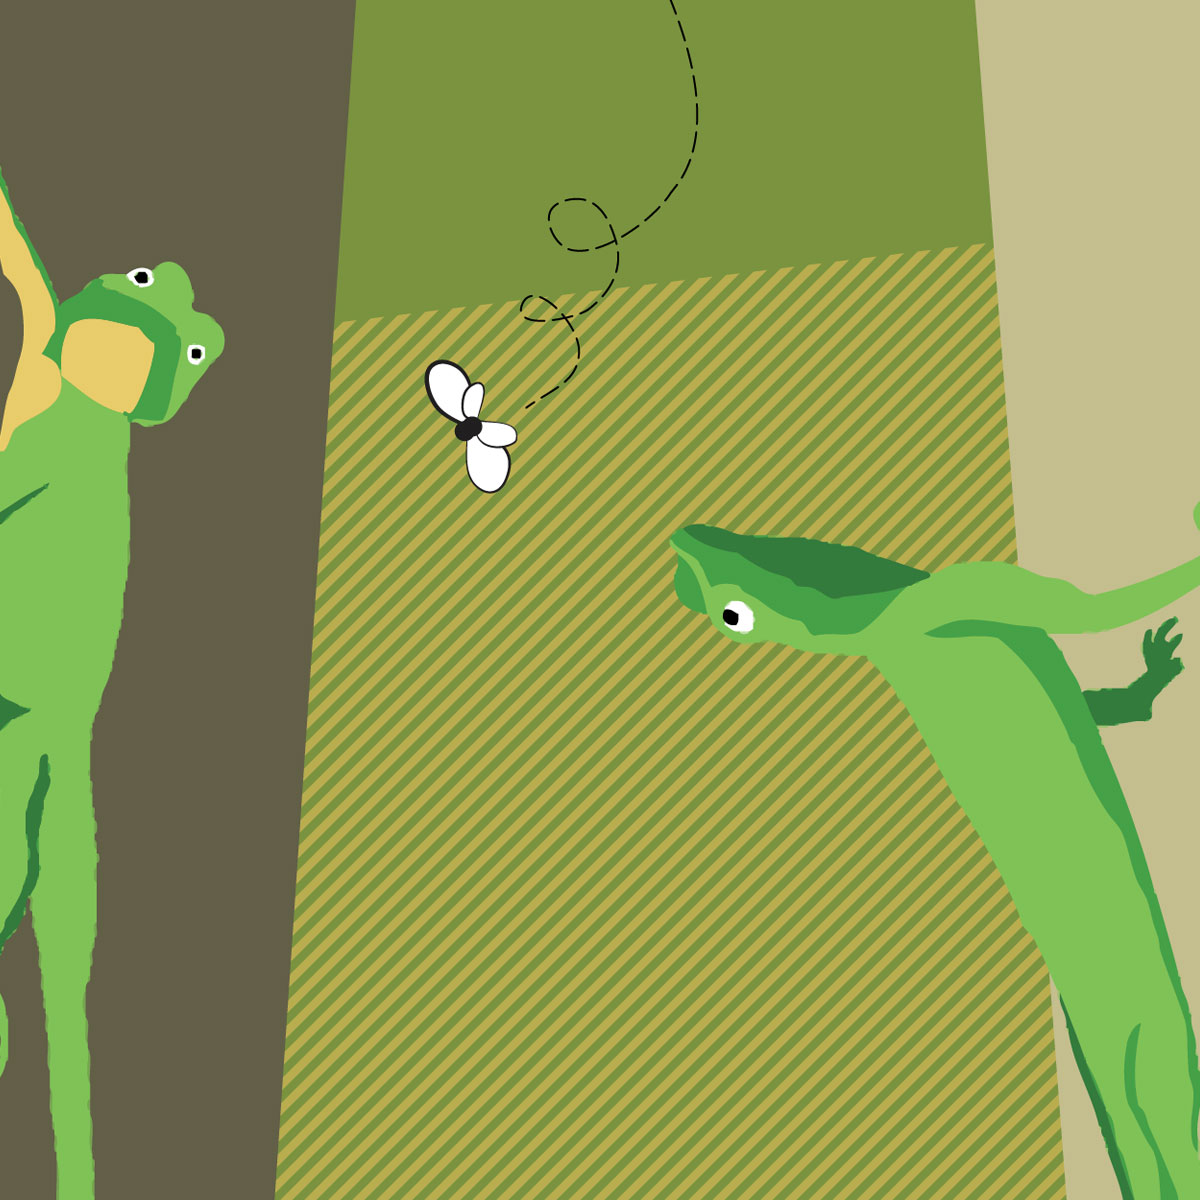 Green Lizard Notebook